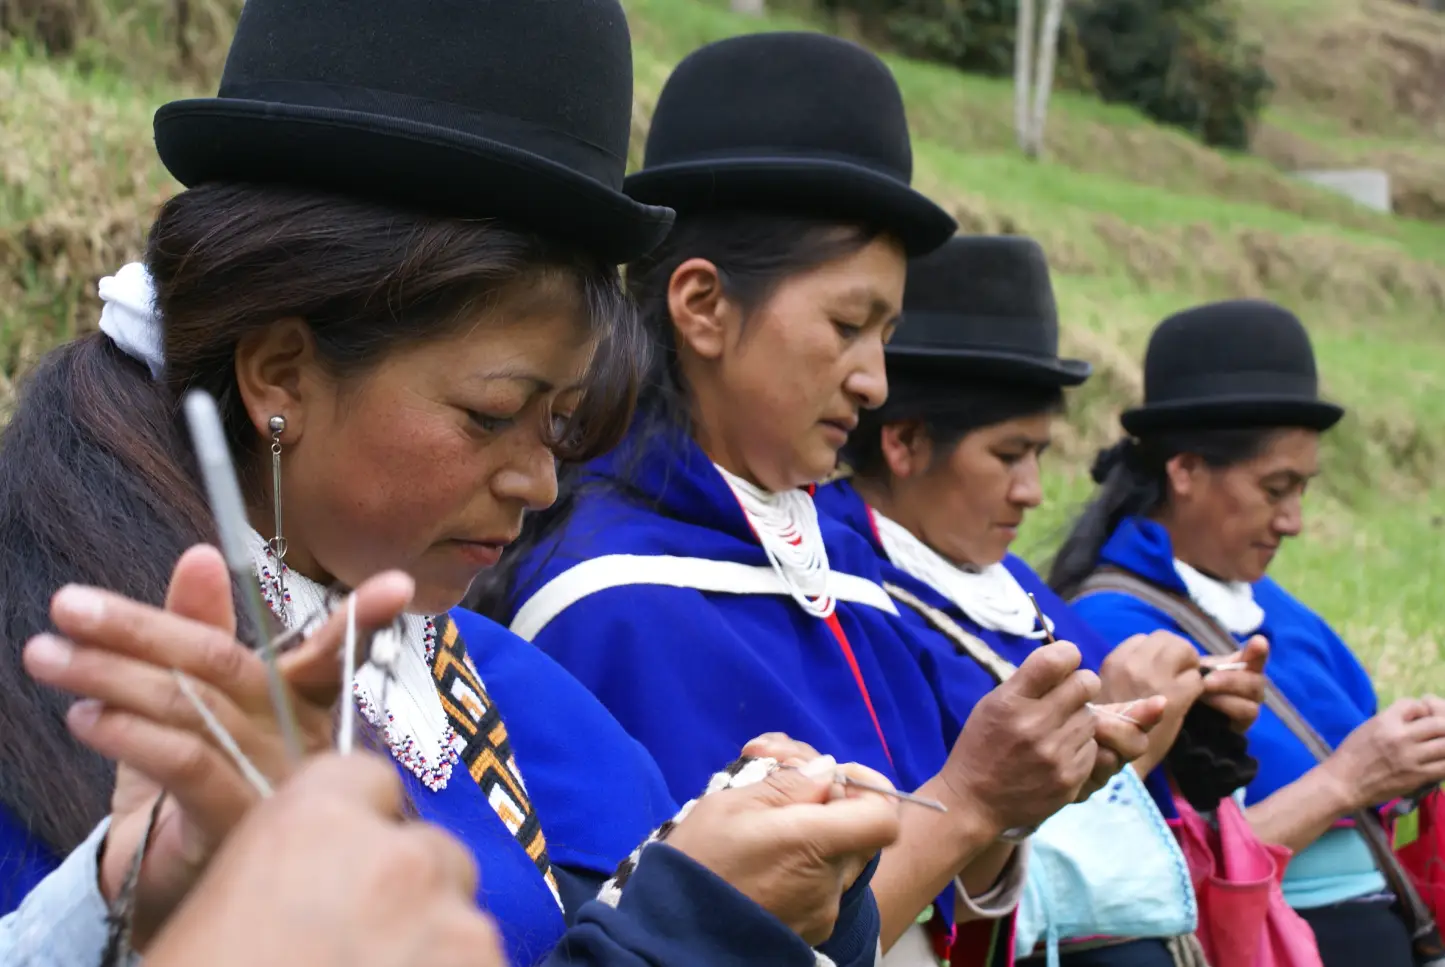 Apoyo a la comercialización de artesanías de mujeres indígenas, Colombia